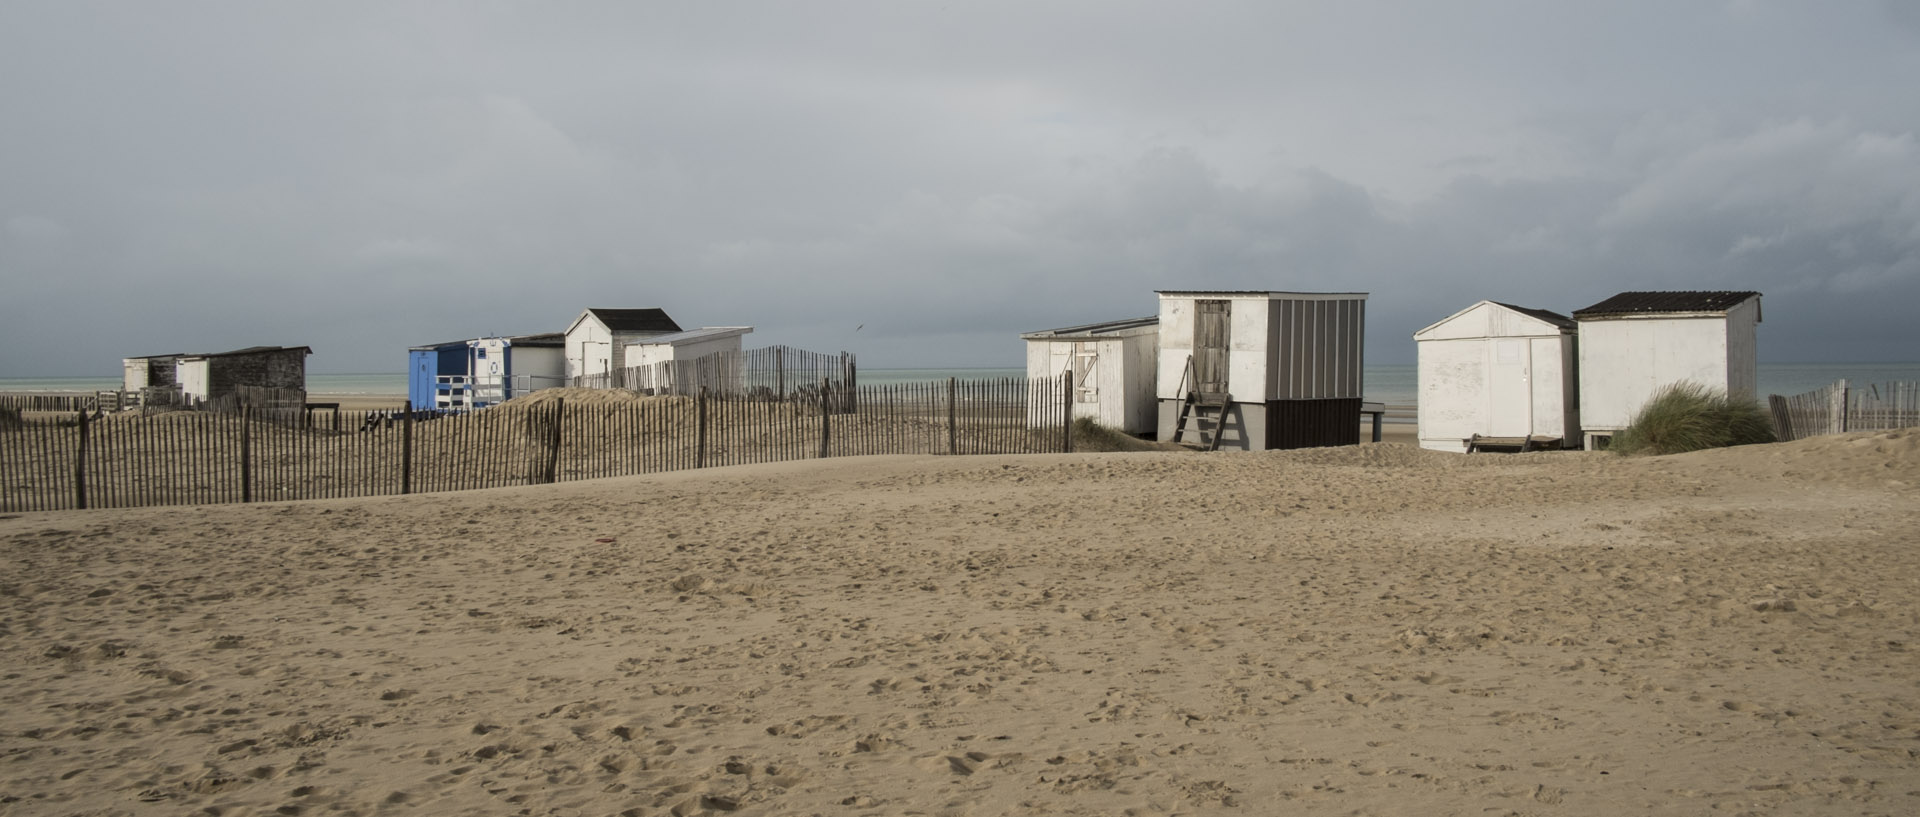 Mercredi 4 novembre 2015, 13:38, plage de Calais